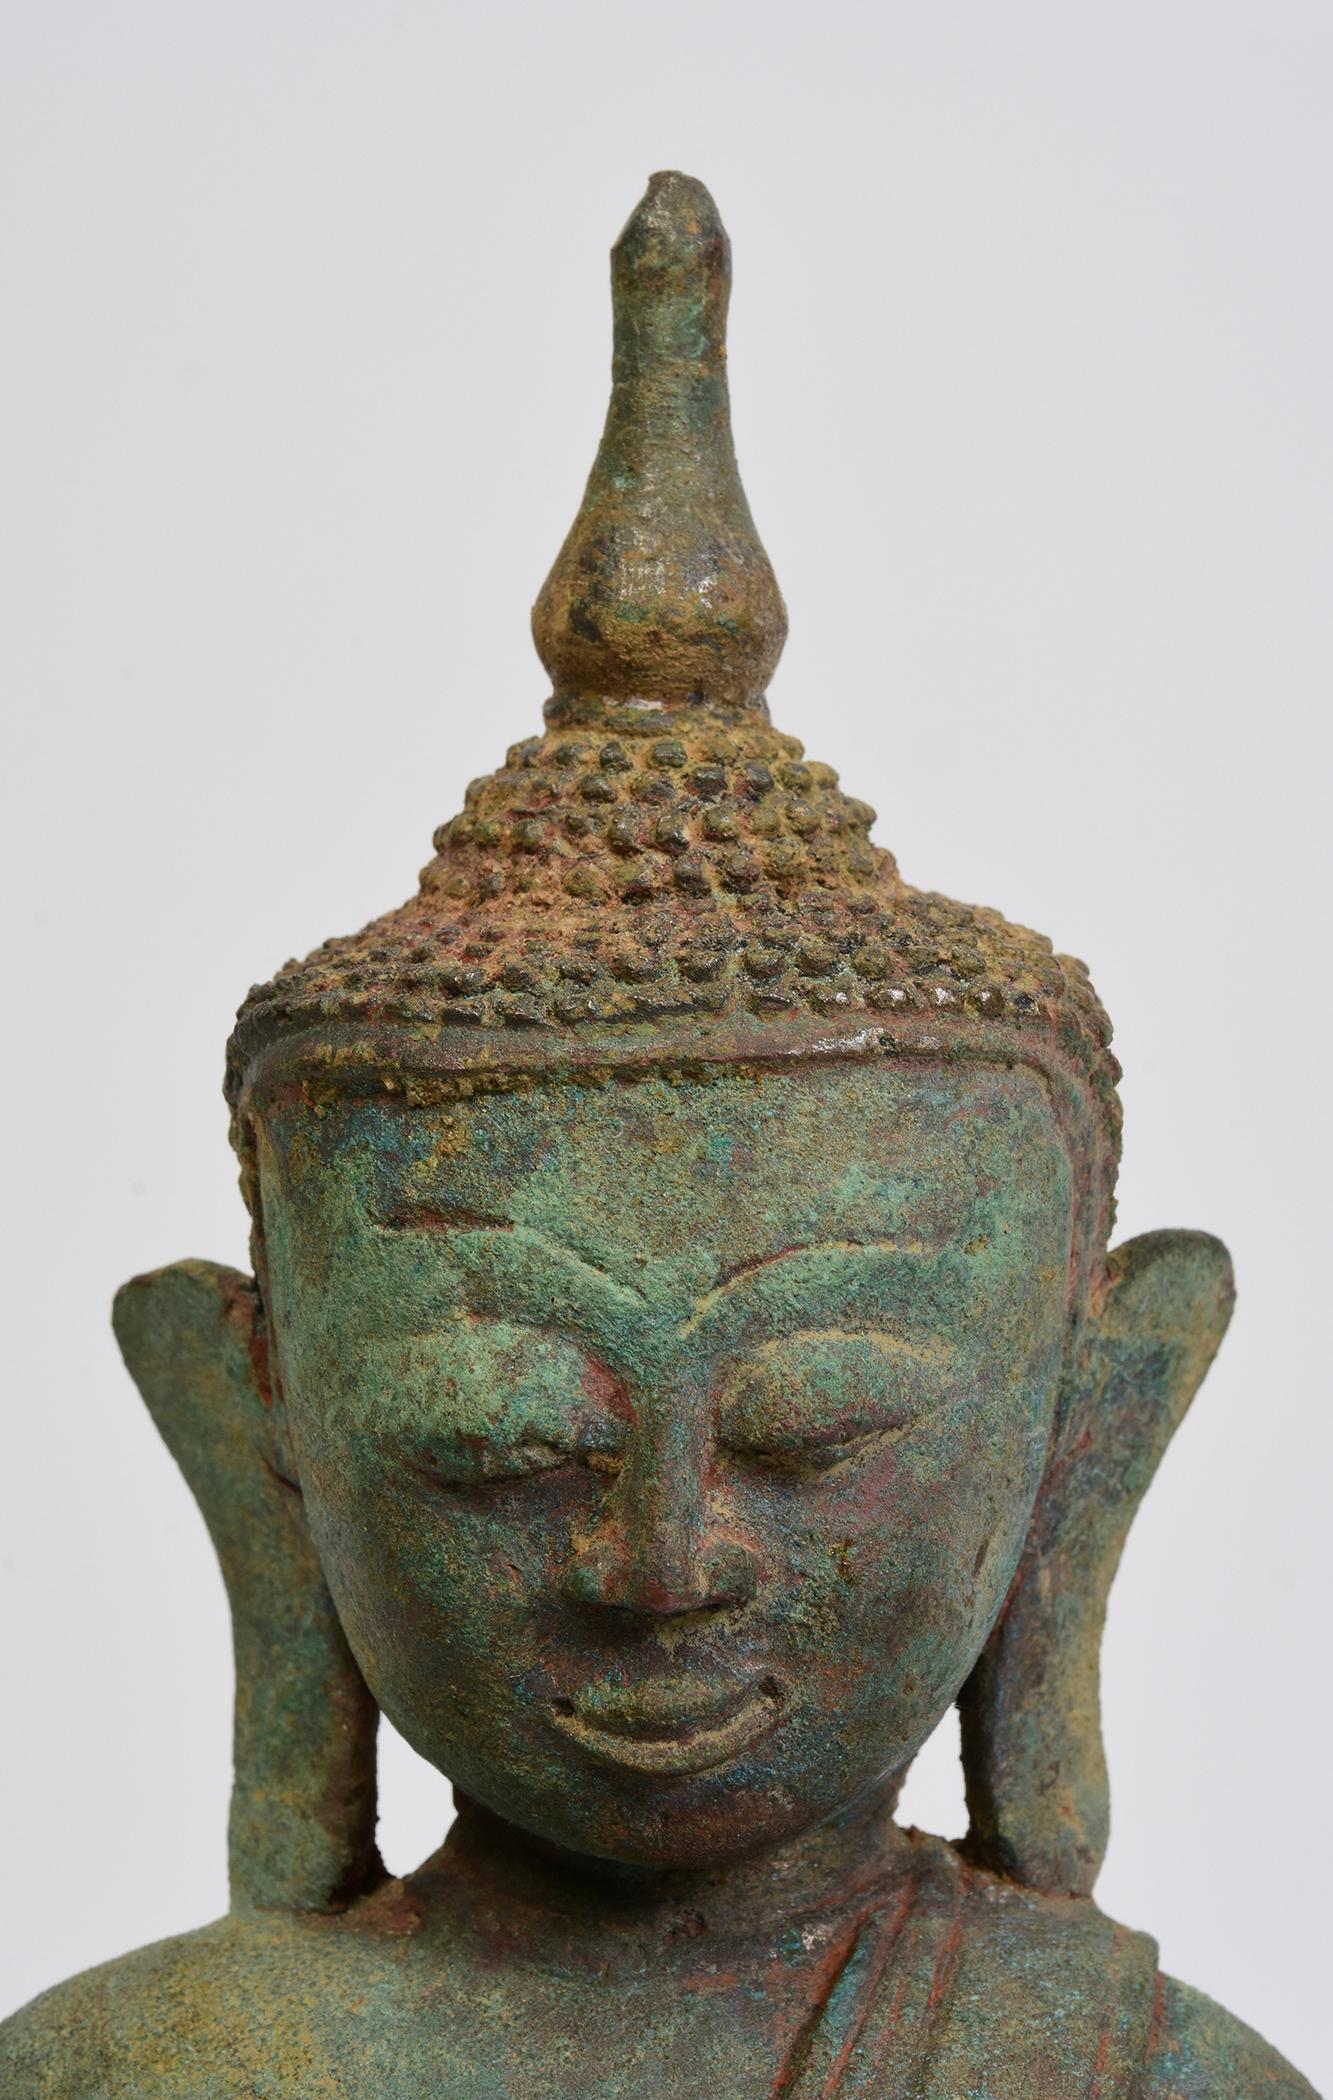 Bouddha ancien en bronze de Birmanie assis dans la posture de Mara Vijaya (appelant la terre à témoigner) sur une base à double lotus avec une excellente patine verte.

Age : Birmanie, Période Shan, 16ème siècle
Dimensions : Hauteur 29.5 C.M. /